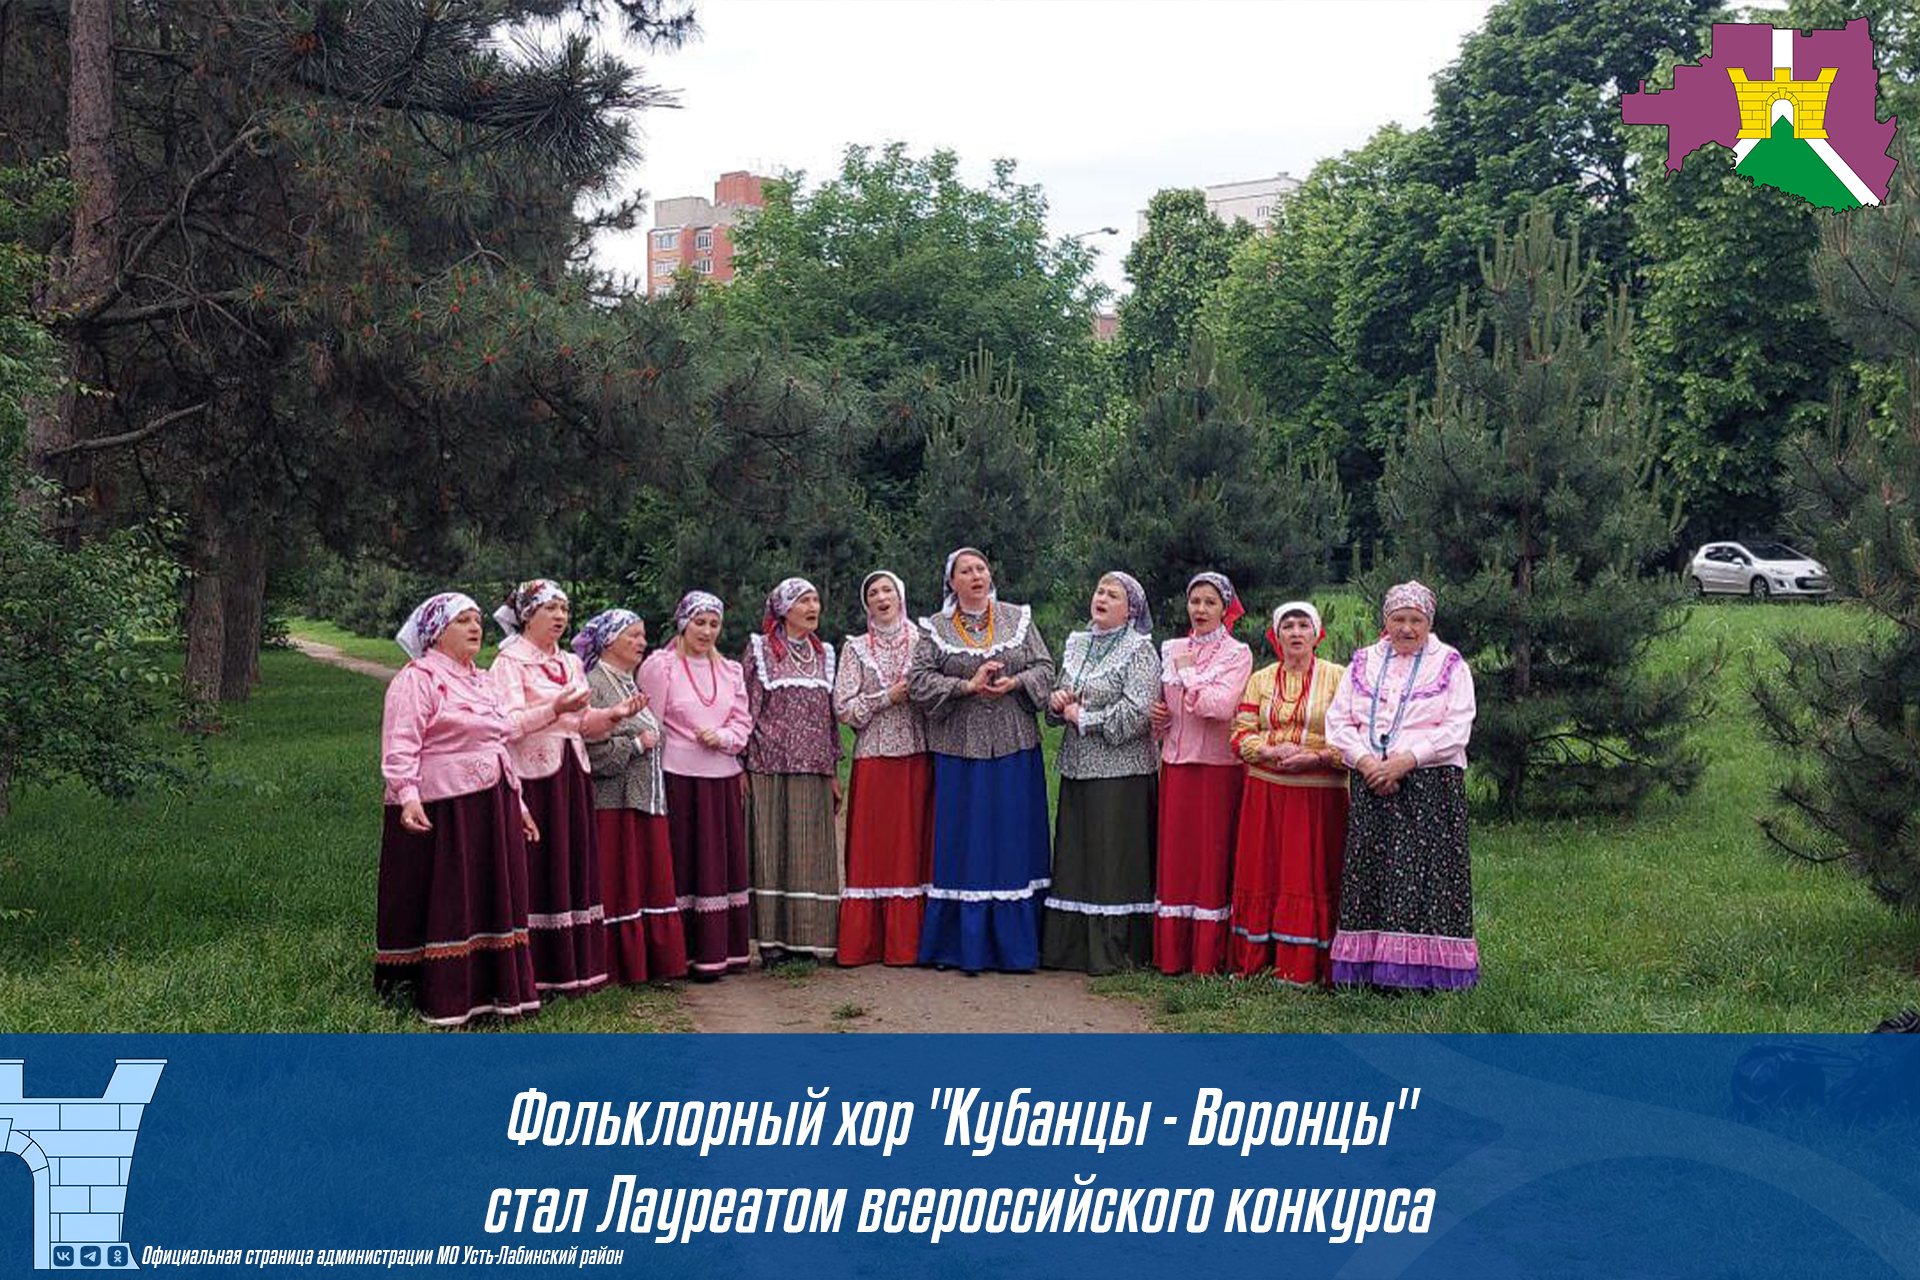 Поздравляем хор "Кубанцы - Воронцы" с победой на Всероссийском конкурсе "Сельские напевы - 2023"!